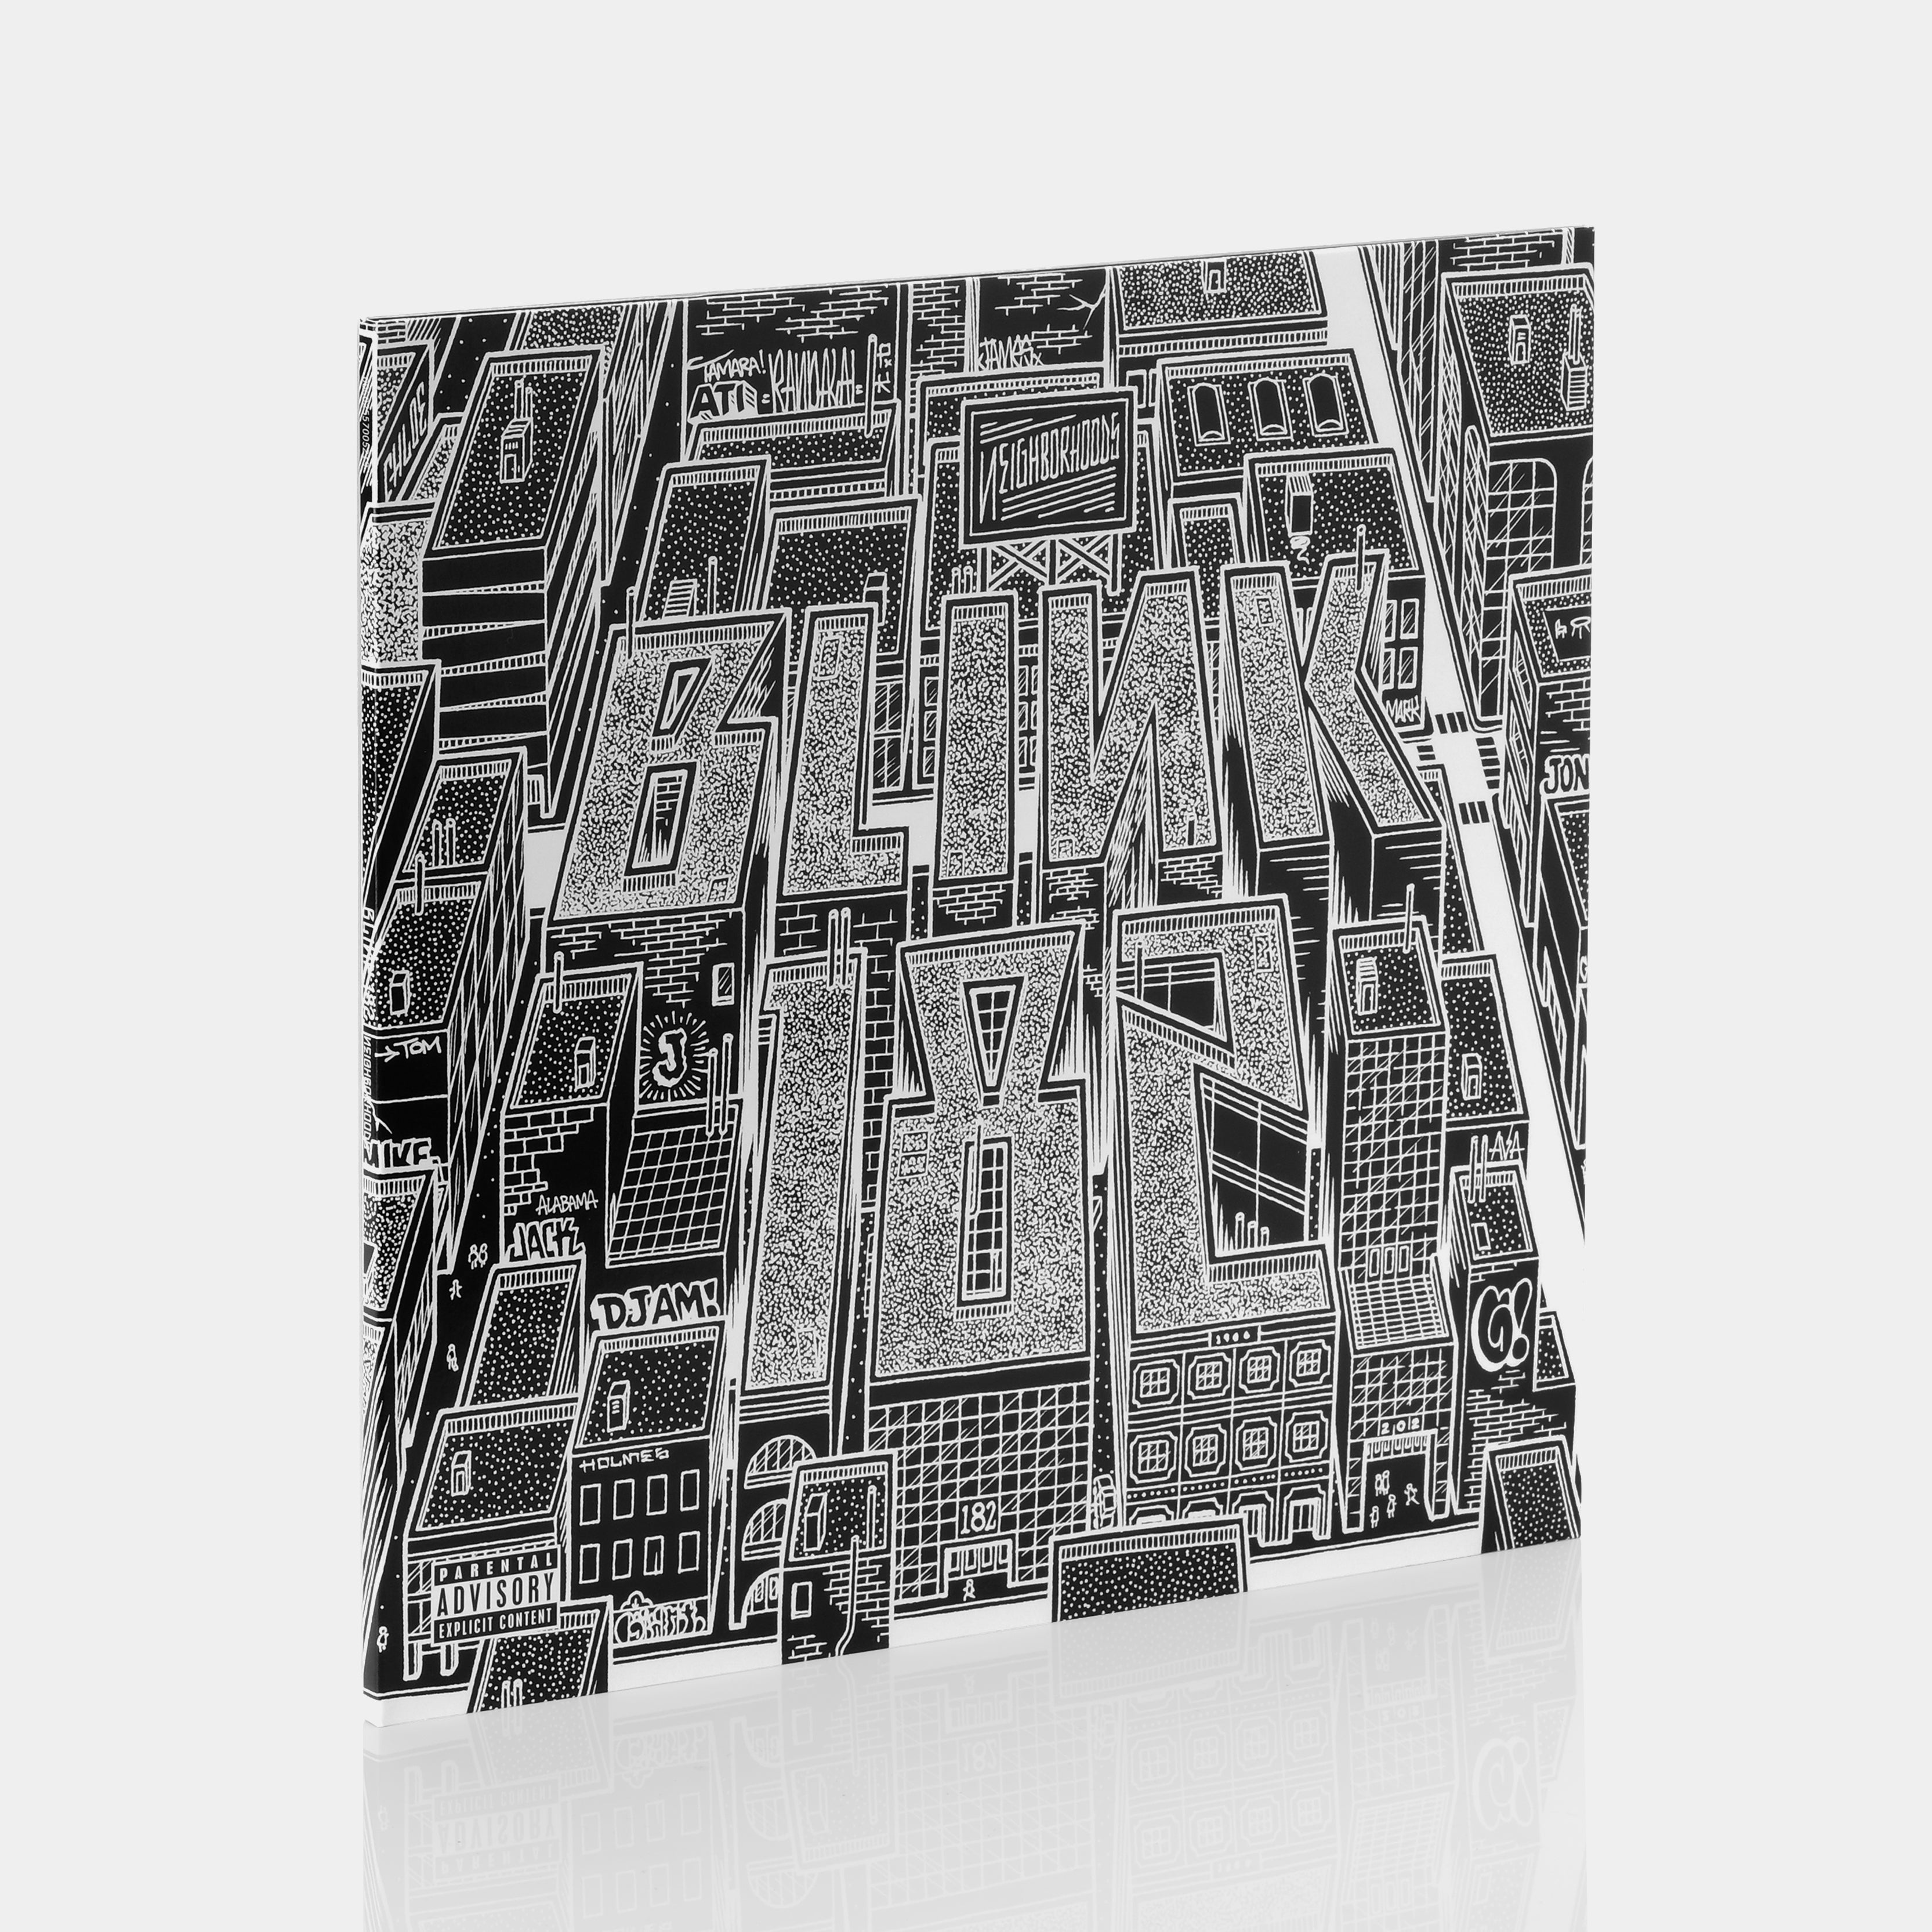 Blink-182 - Neighborhoods 2xLP Vinyl Record